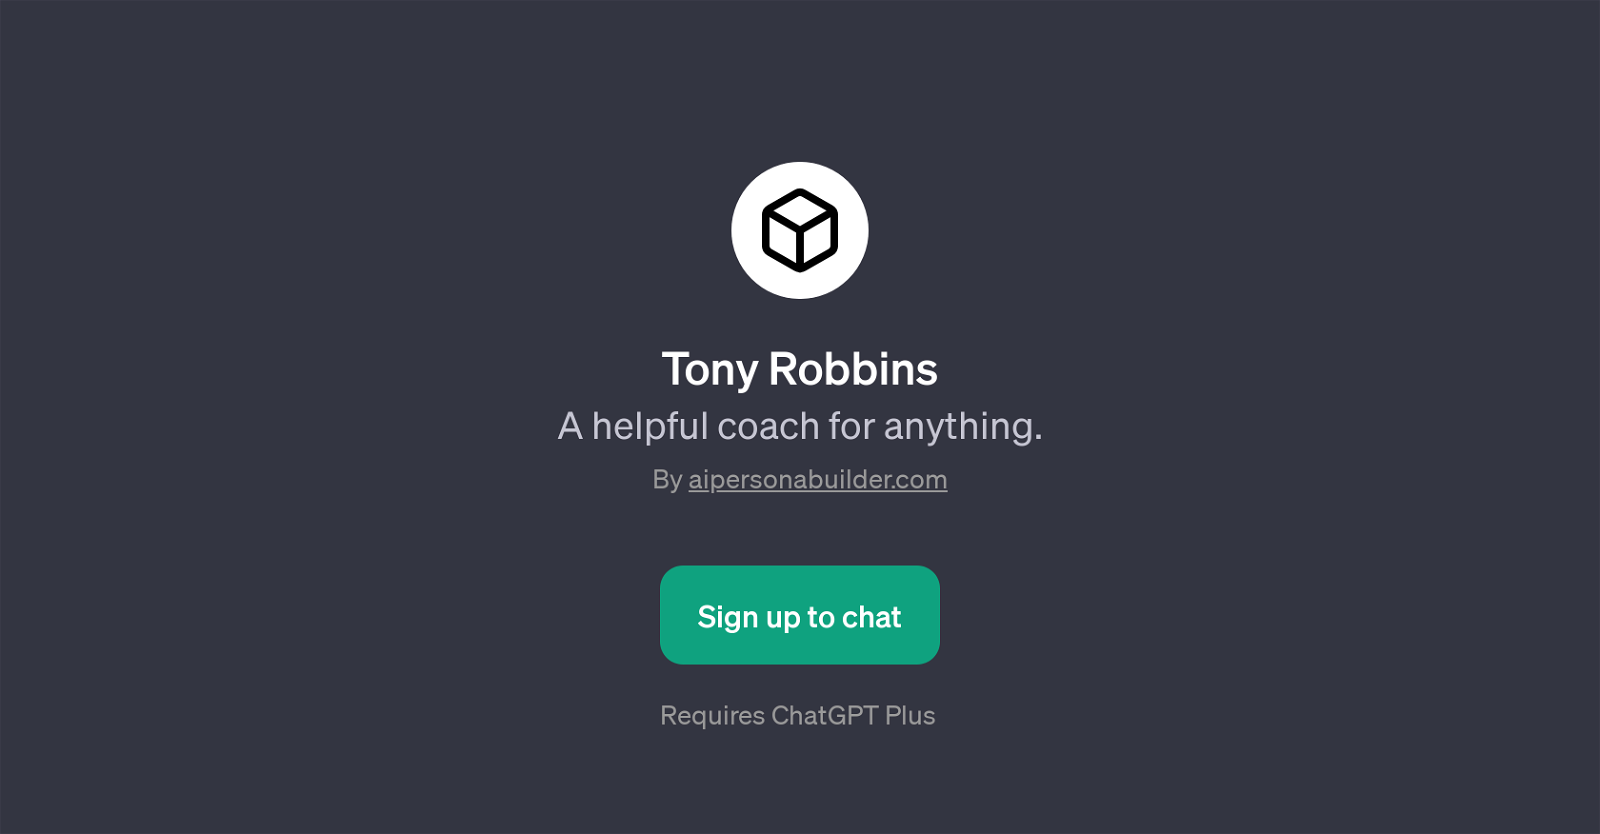 Tony Robbins website